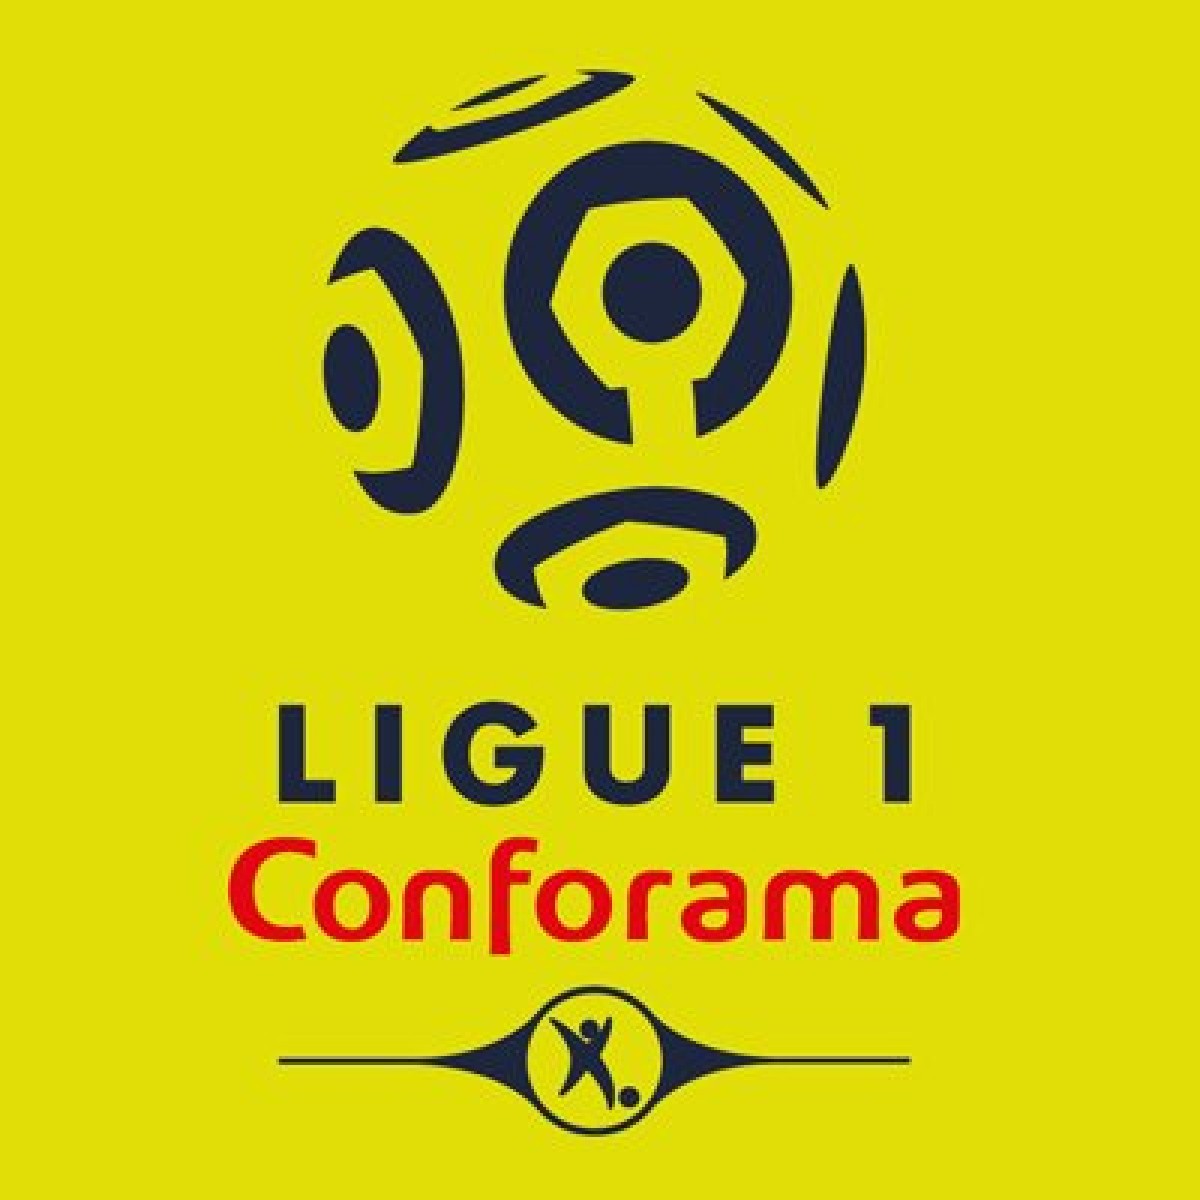 Ligue 1 - 34^ giornata: tutto incerto nella zona Europa, occhio anche agli ultimi posti